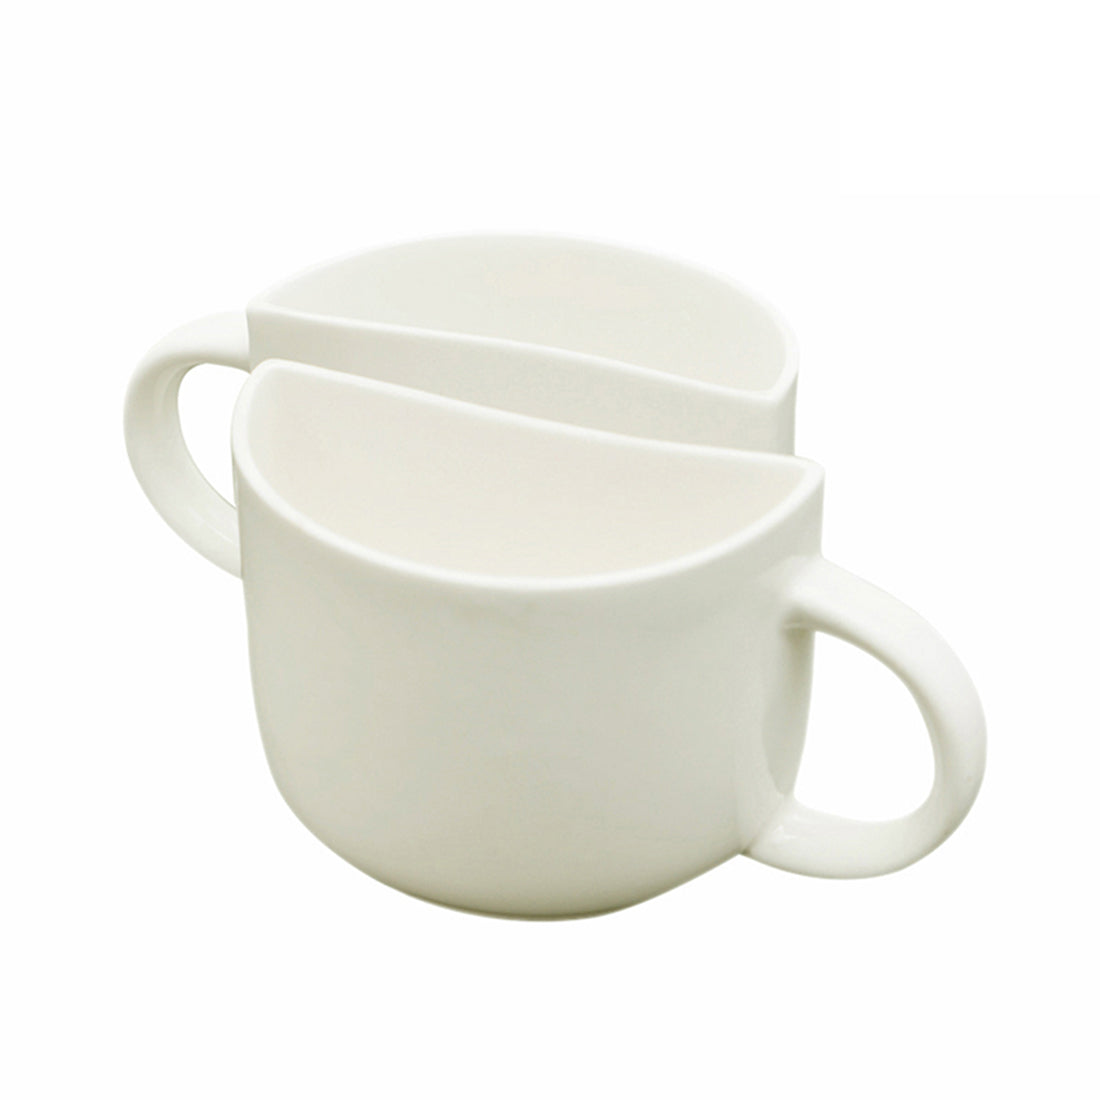  Ceramic Cups